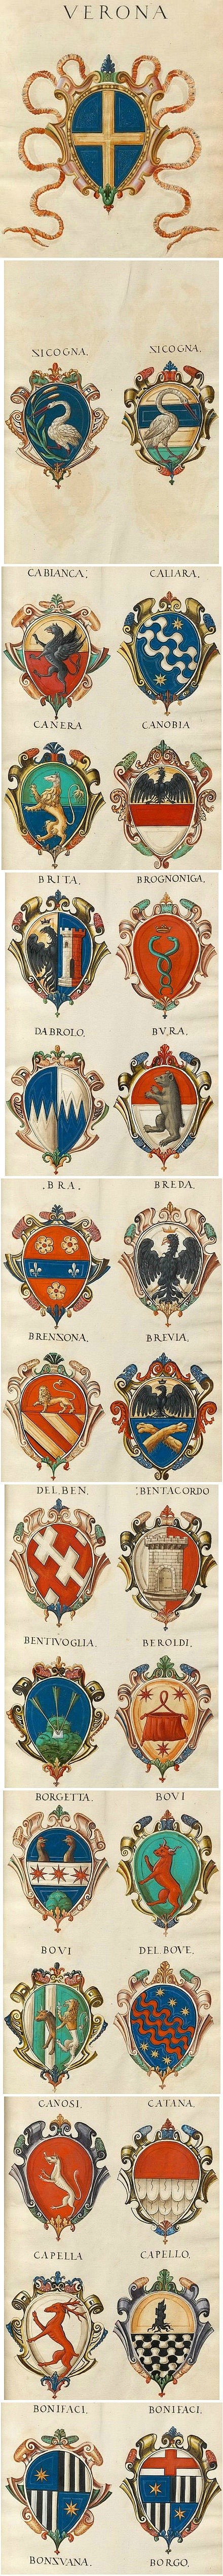 中世纪欧洲贵族族徽设计 